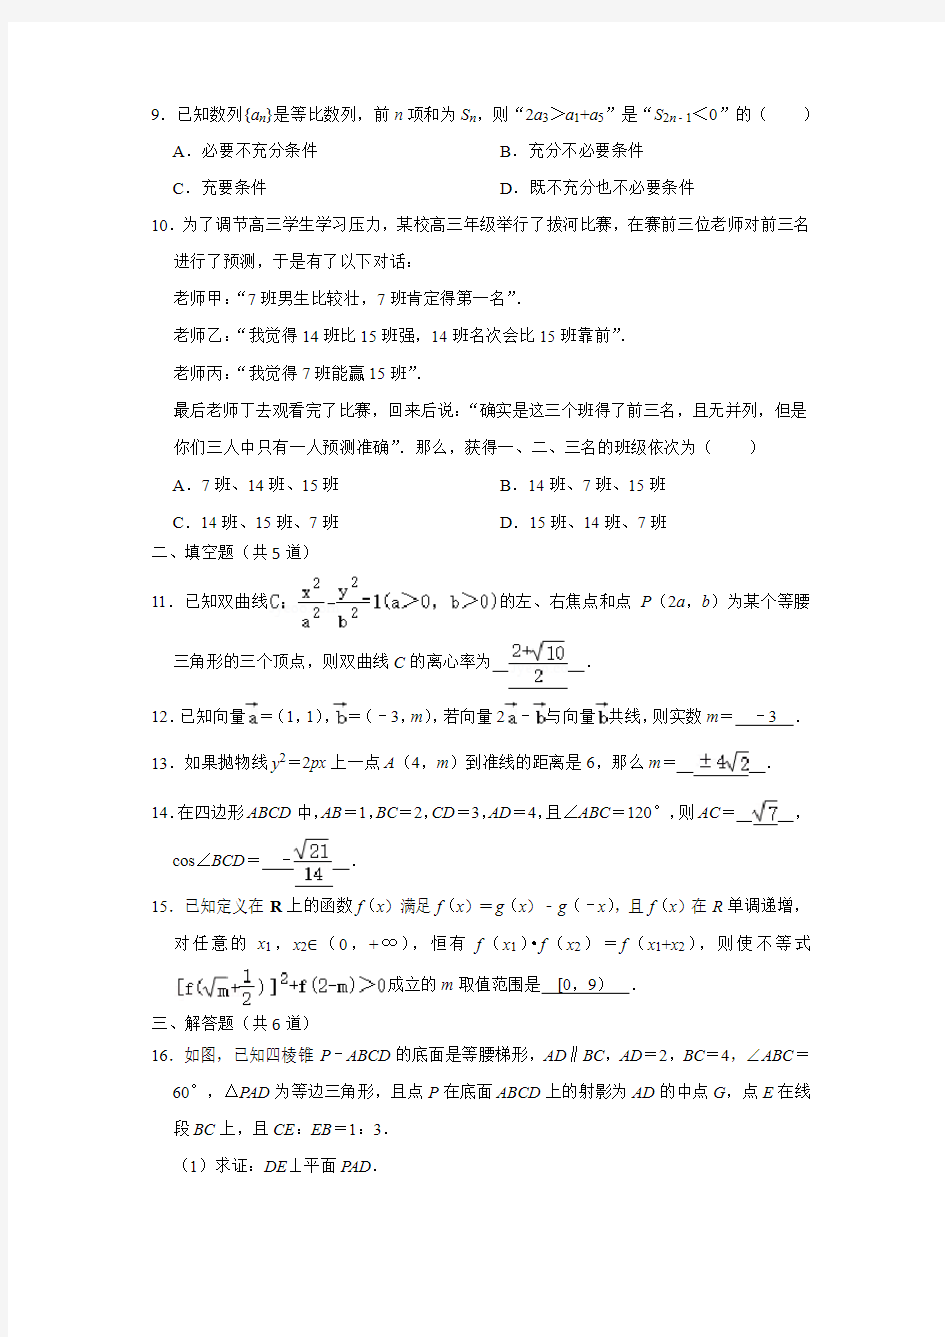 2020年北京市高考数学模拟试卷(4月份)